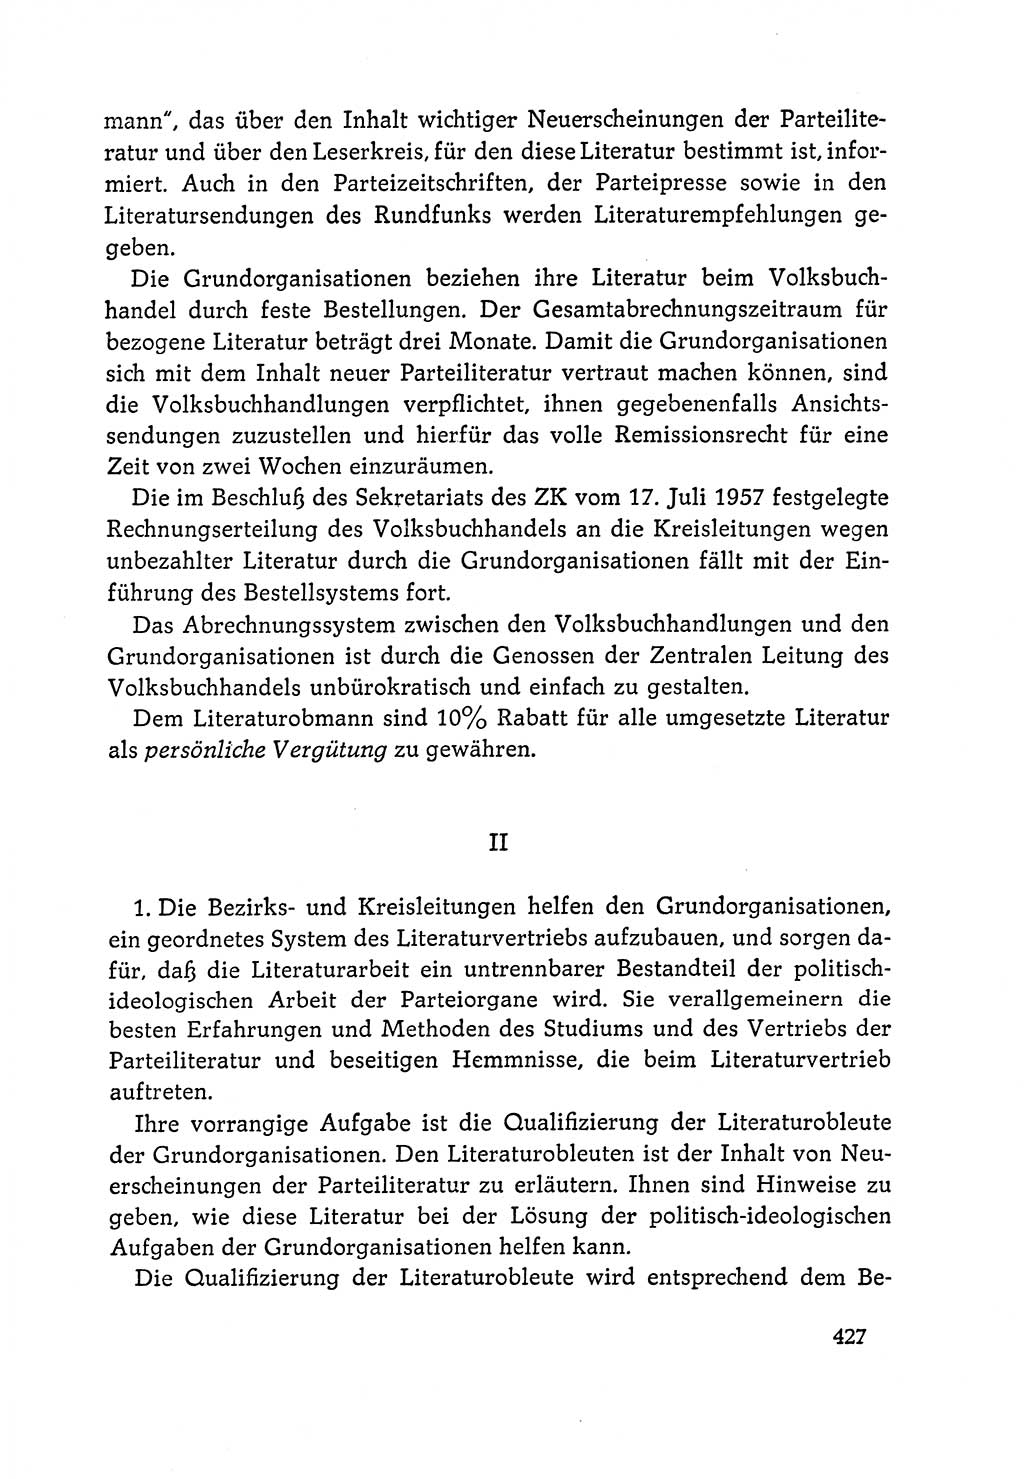 Dokumente der Sozialistischen Einheitspartei Deutschlands (SED) [Deutsche Demokratische Republik (DDR)] 1964-1965, Seite 427 (Dok. SED DDR 1964-1965, S. 427)